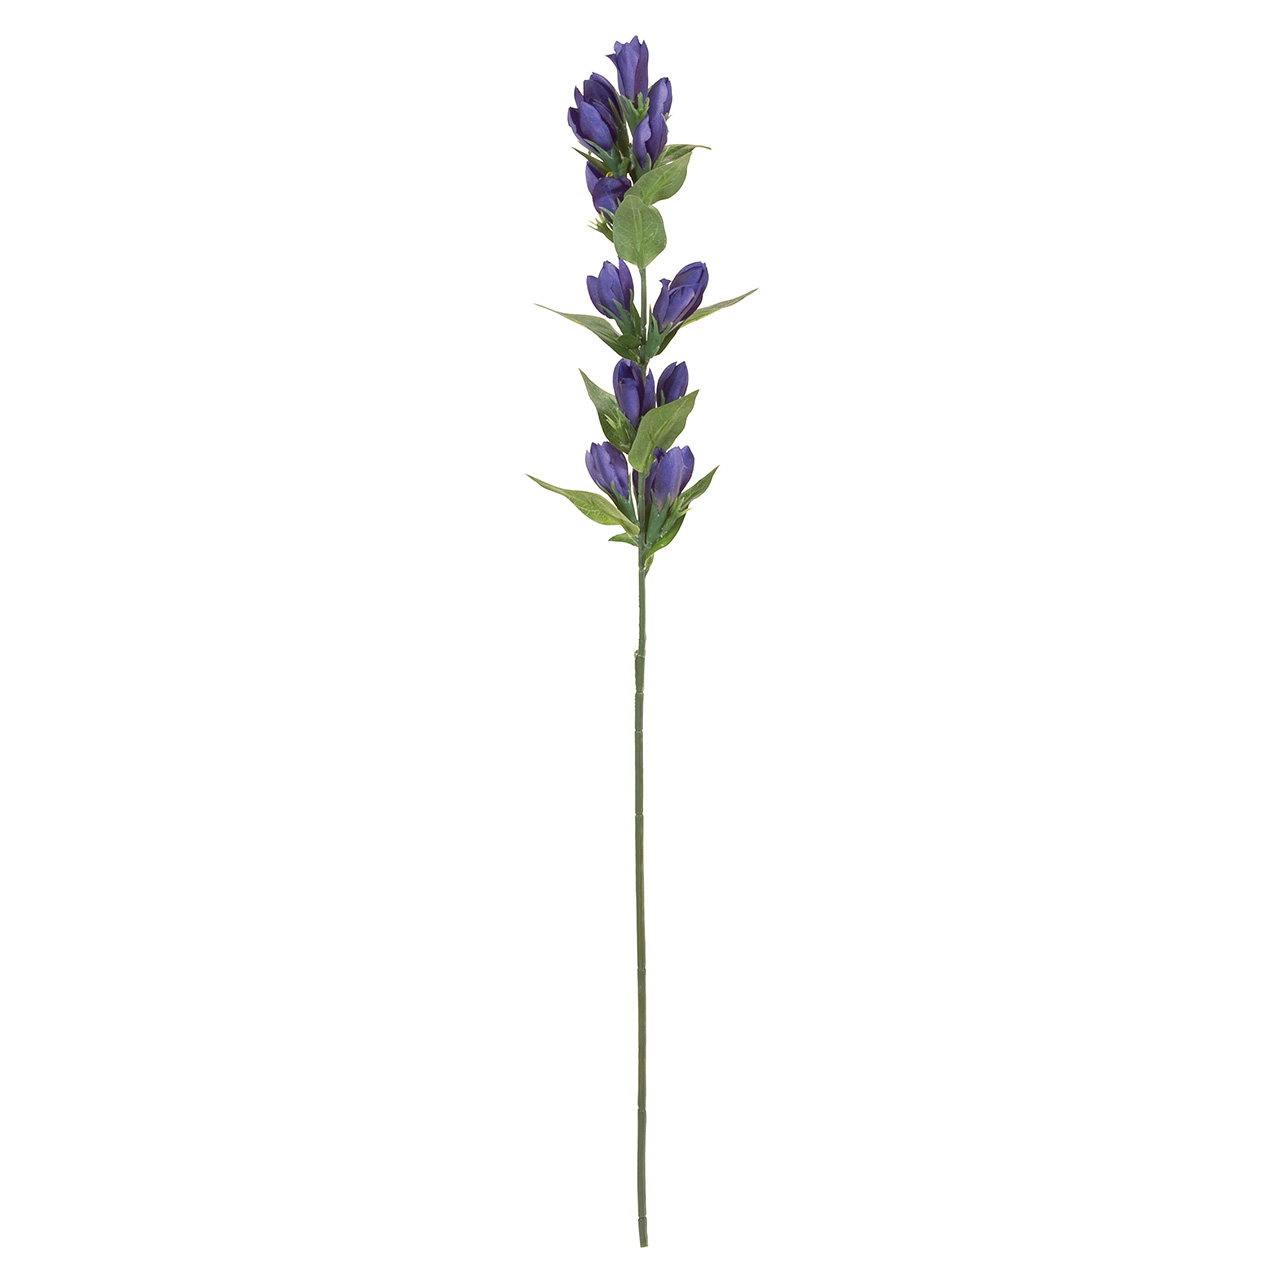 マイフラ 通販 Magiq りんどうスプレー ブルー アーティフィシャルフラワー 造花 Fm 010 花径 約4 5 全長 約65cm ブルー Magiq アーティフィシャルフラワー 造花 全国にmagiq 花器 花資材などをお届けします